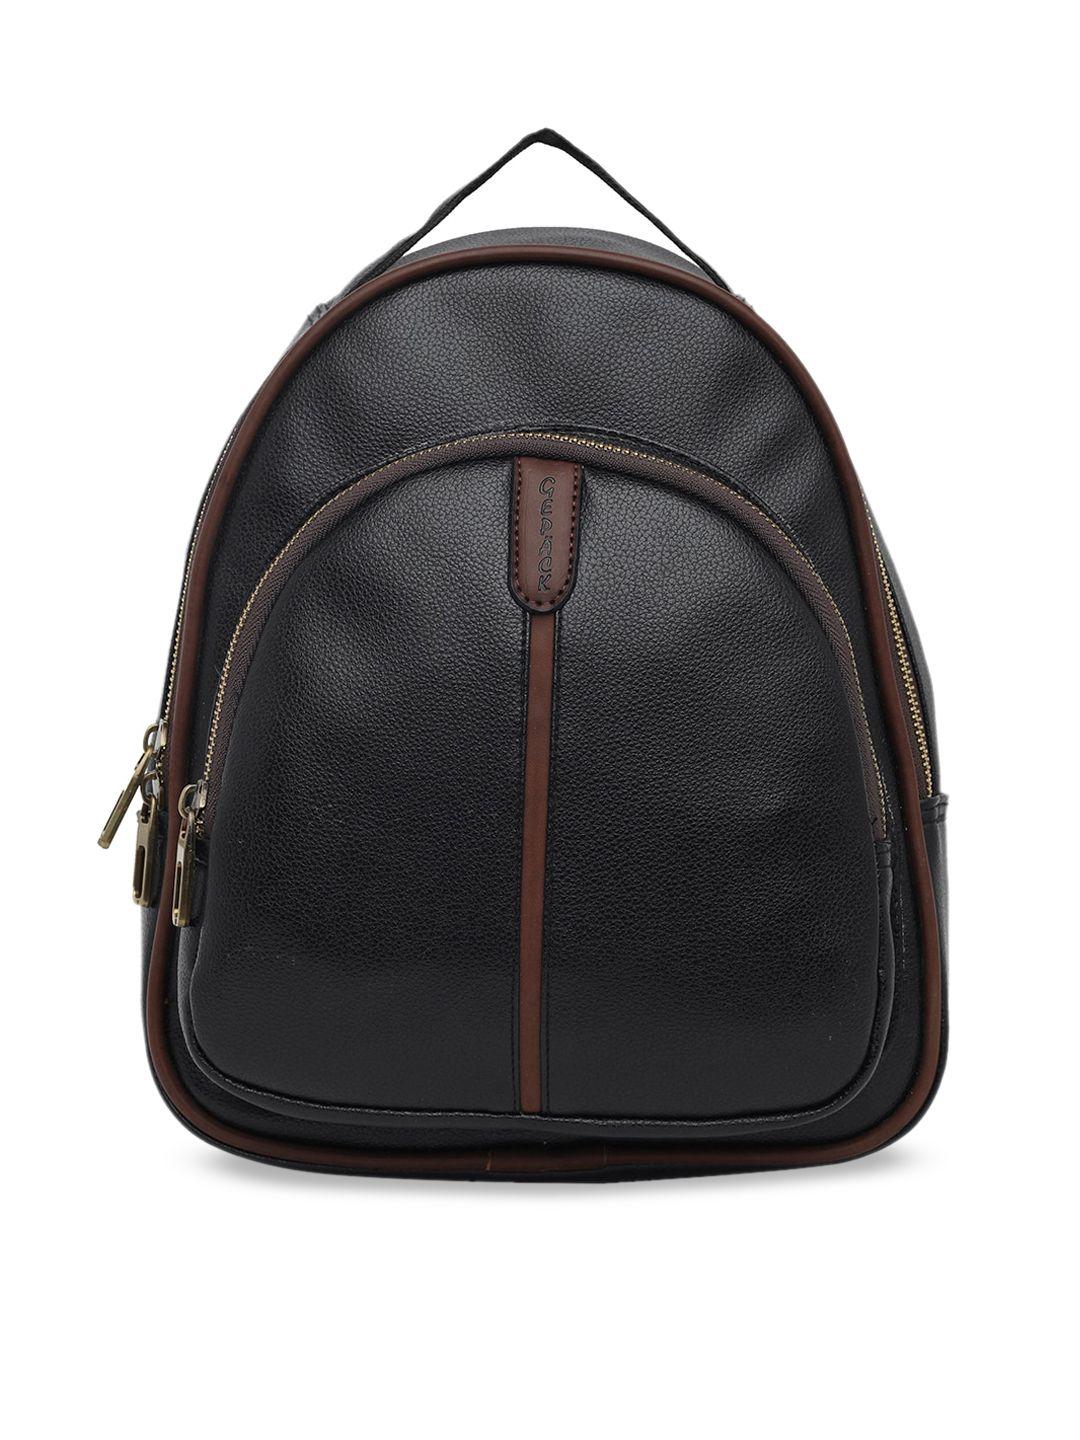 GEPACK by BagsRUs Women Black & Brown Solid Backpack